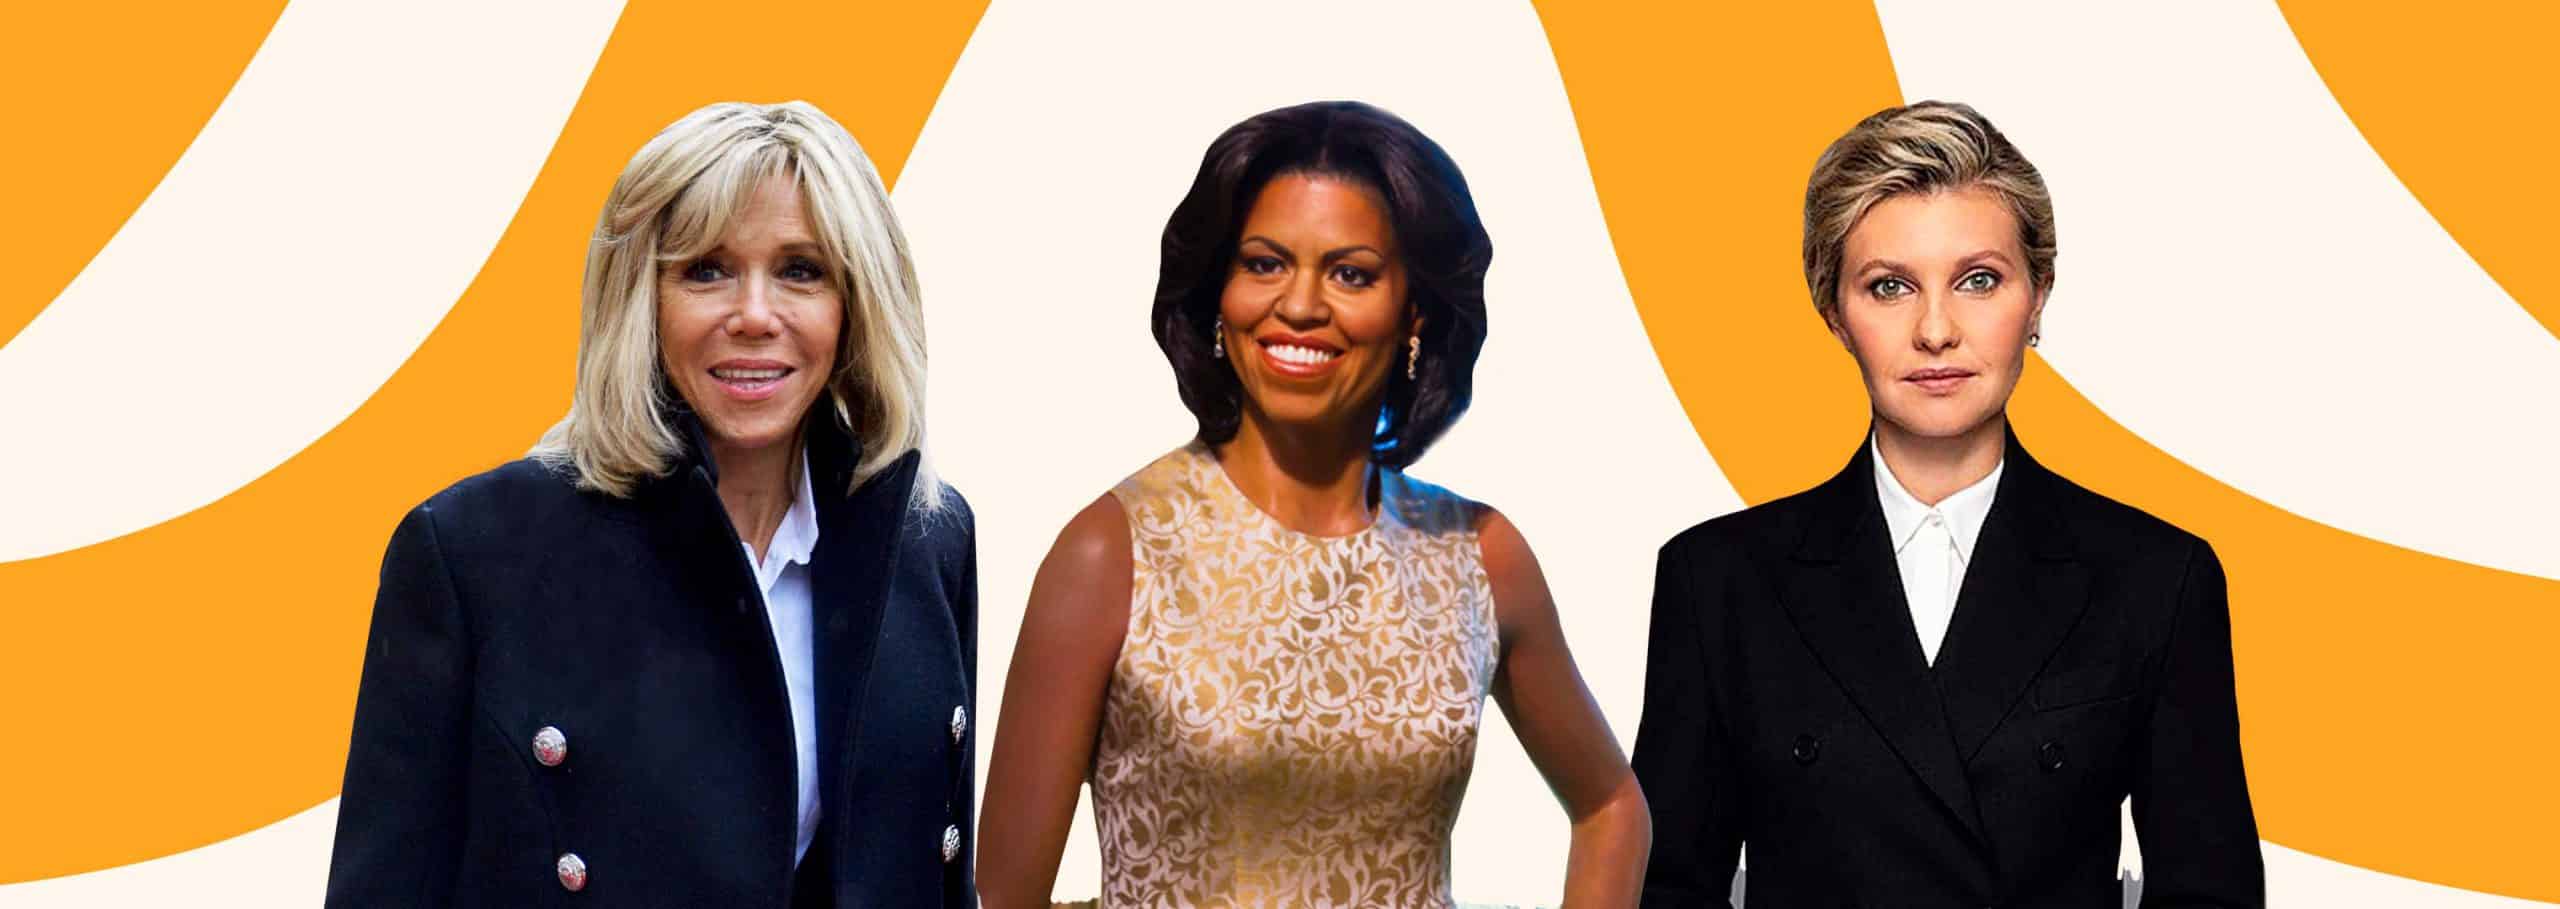 Від Мішель Обами до Бріджит Макрон: чим займаються дружини президентів? Фото 4